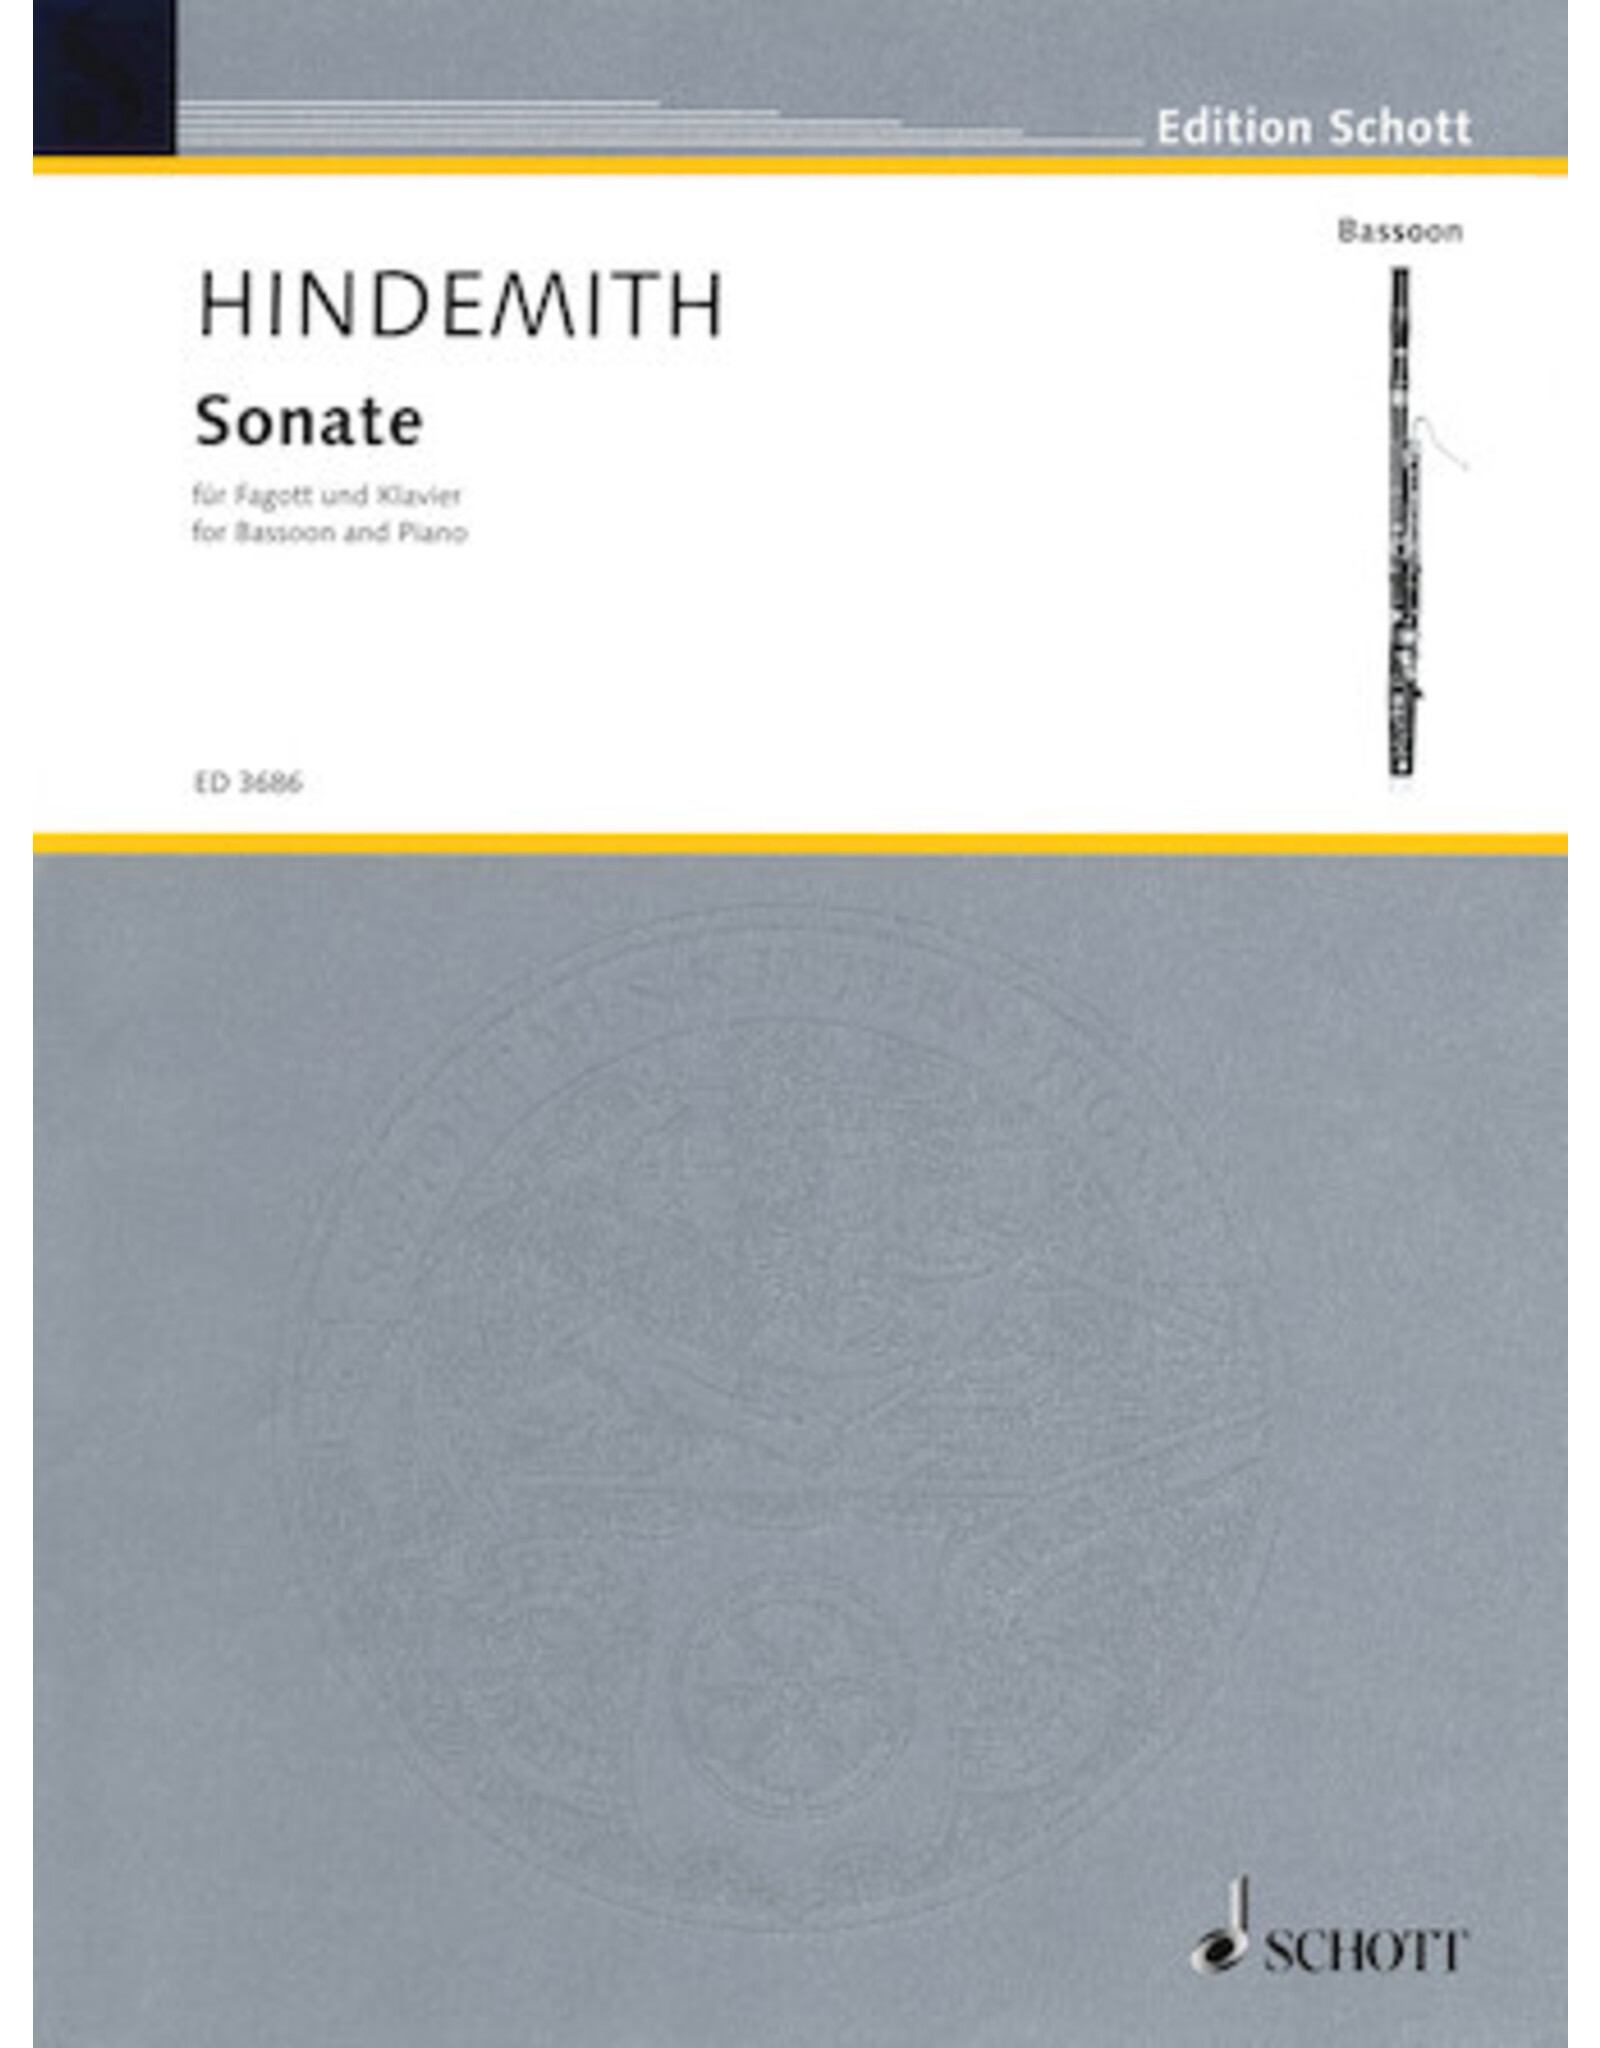 Hal Leonard Hindemith - Sonata Bassoon with Piano Accompaniment Schott